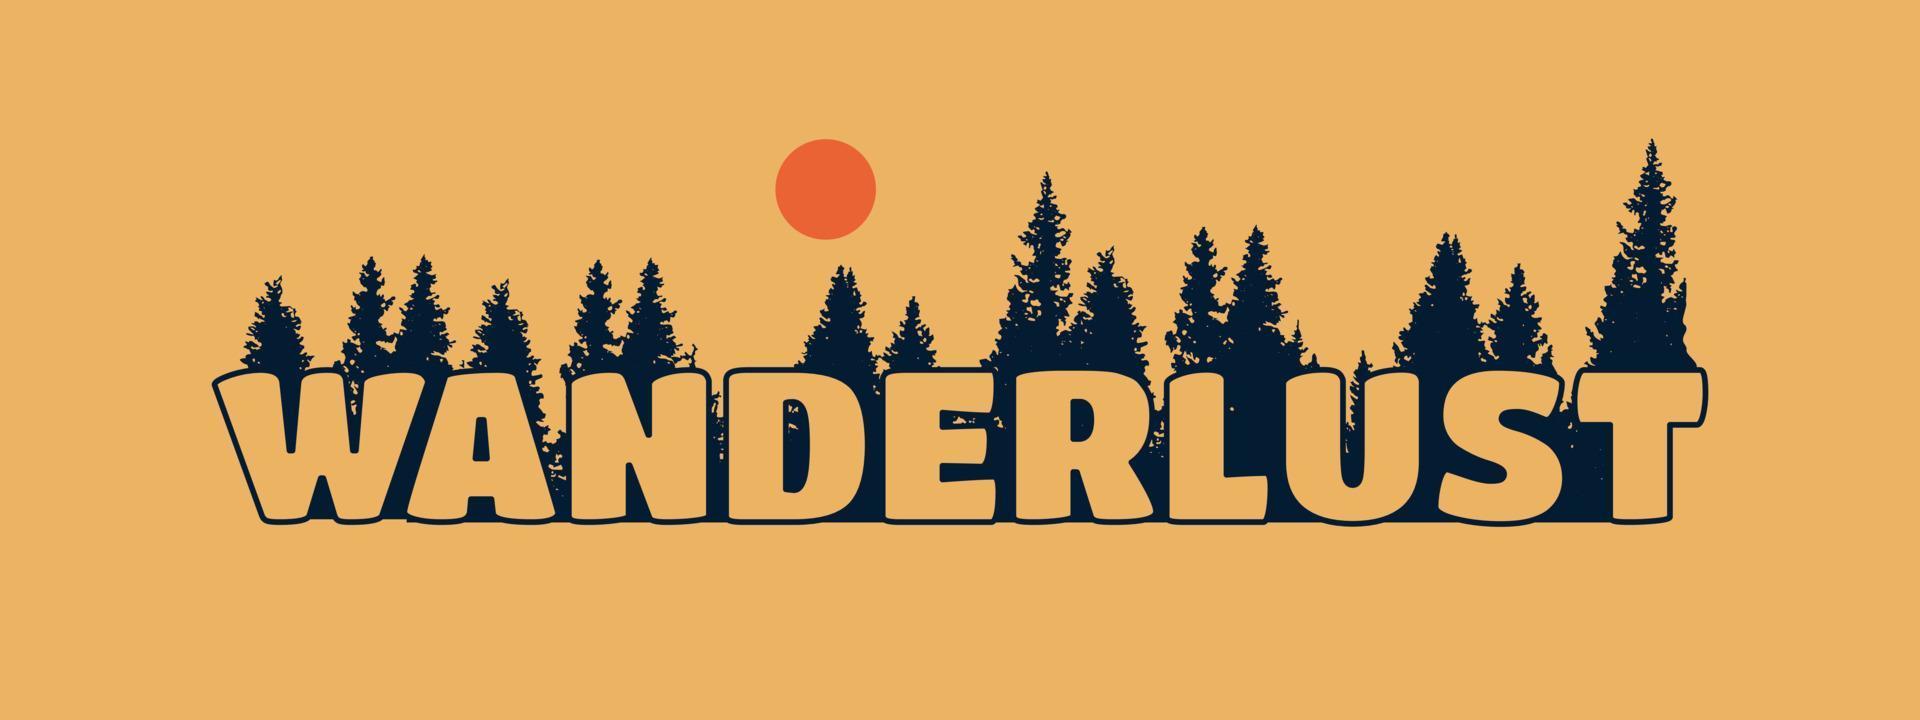 Wanderlust-Brief mit Pinienwald auf Hintergrunddesign für T-Shirts, Aufkleber und andere Zwecke vektor